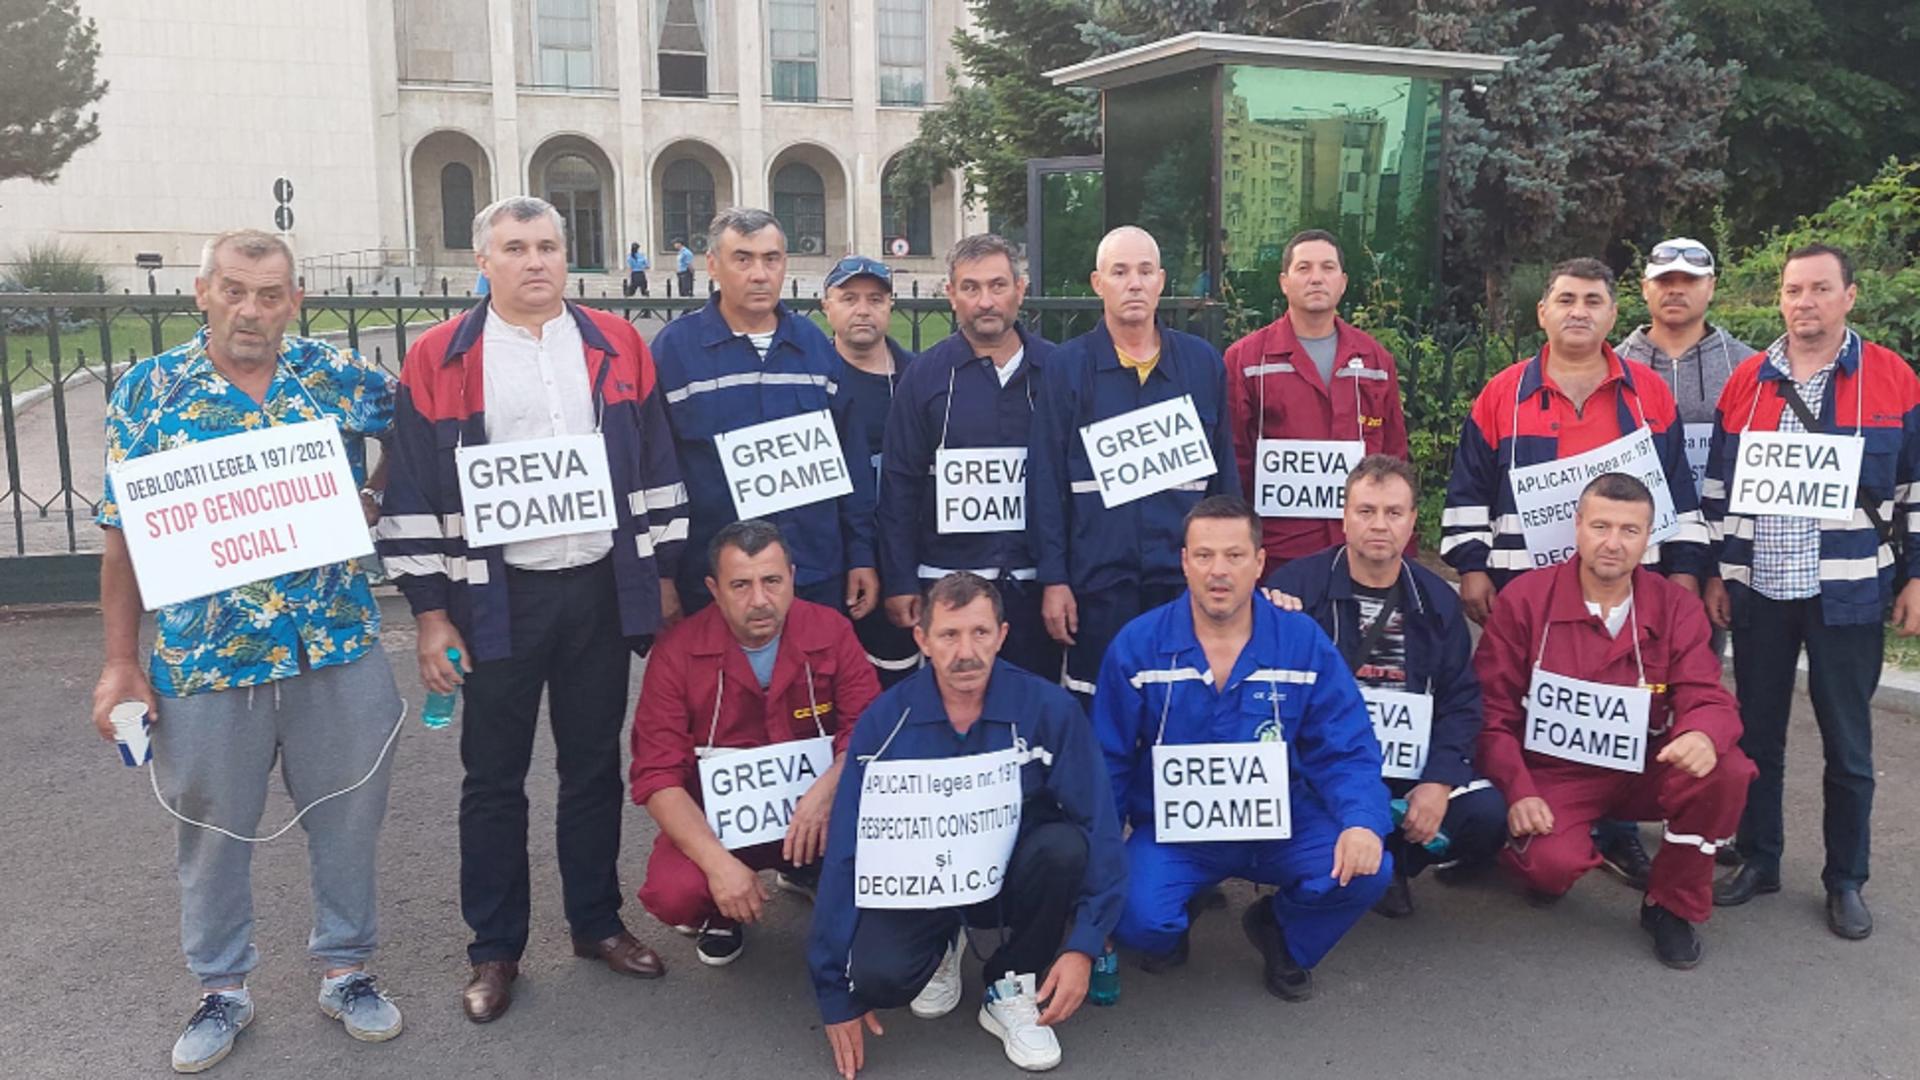 Angajații CE Oltenia aflați în greva foamei